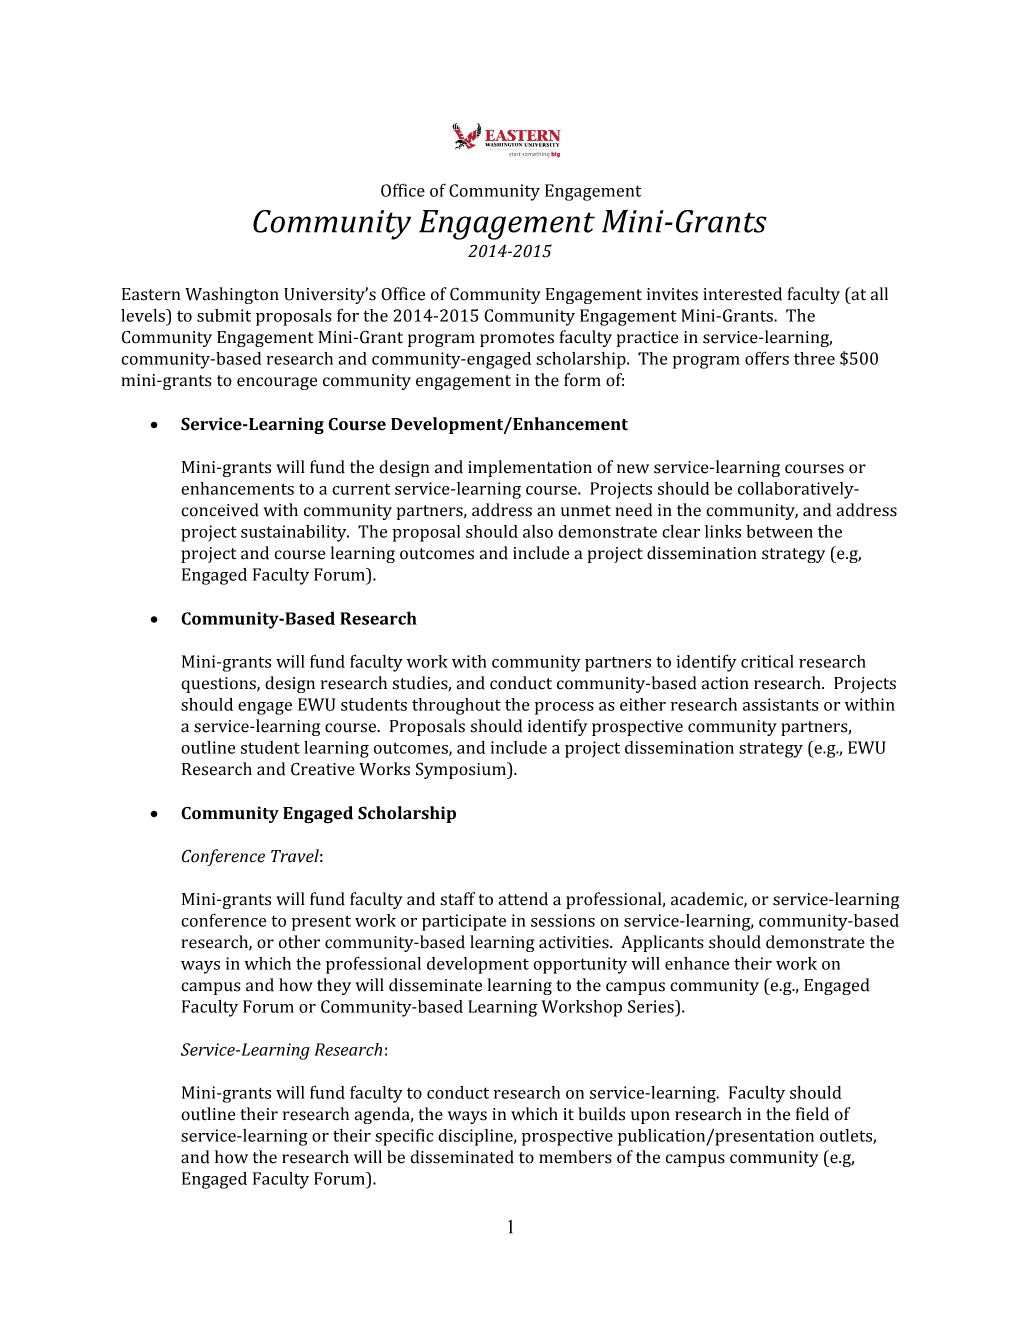 Community Engagement Mini-Grants